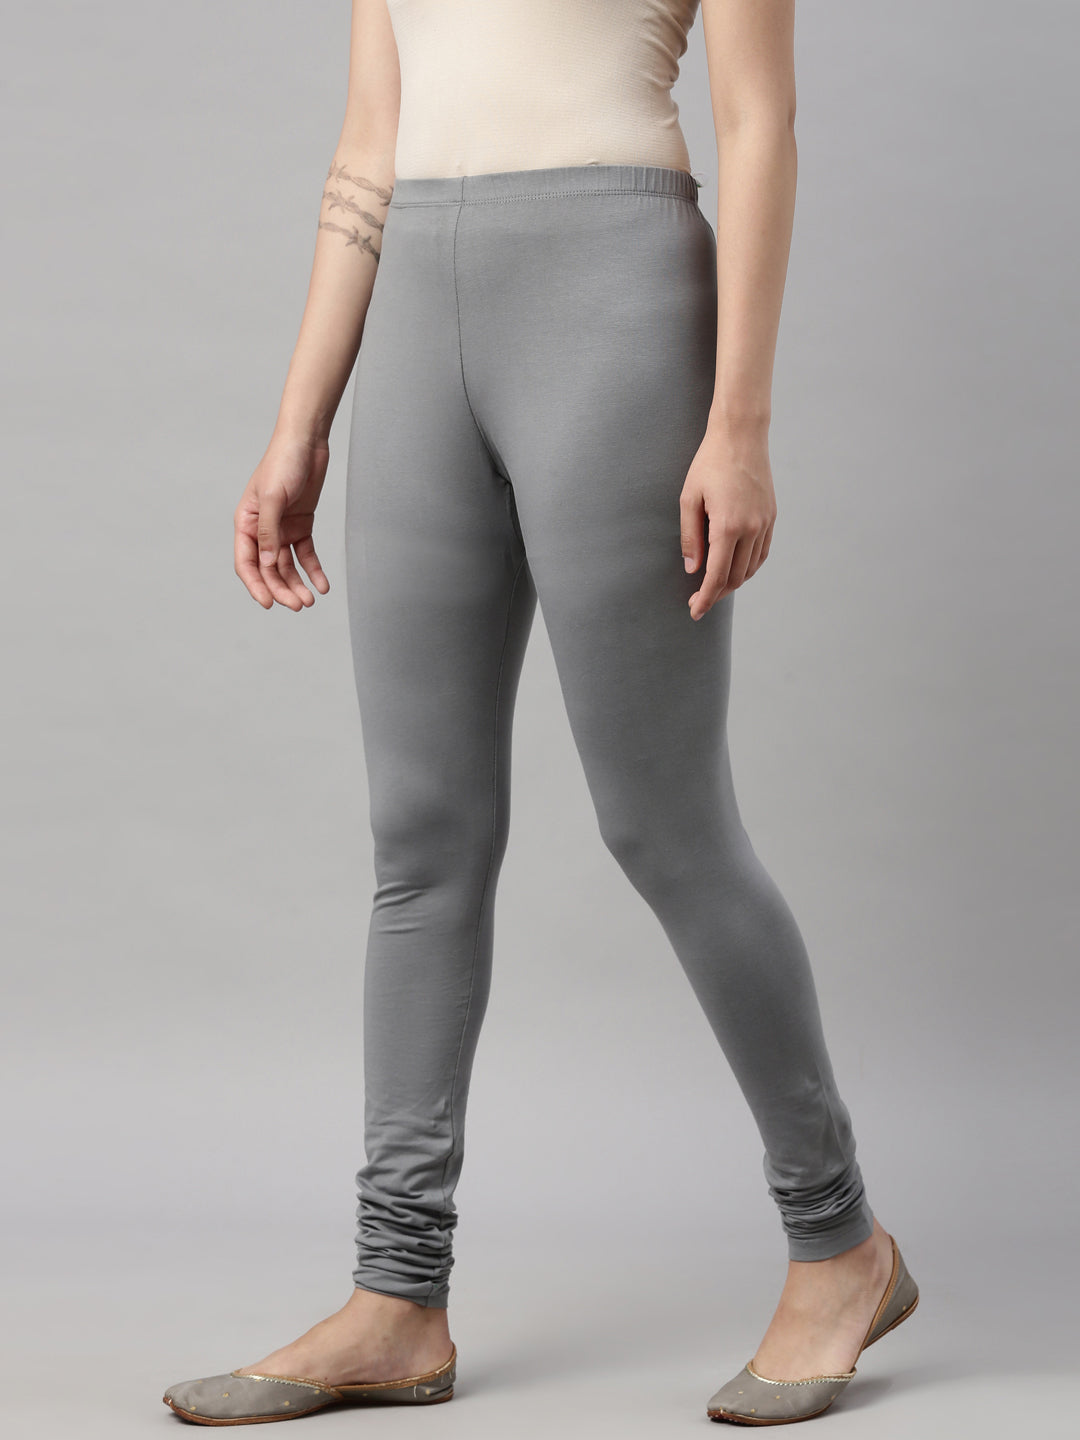 Womens 4 Way Stretch Chudi Leggings - Grey – Minelli